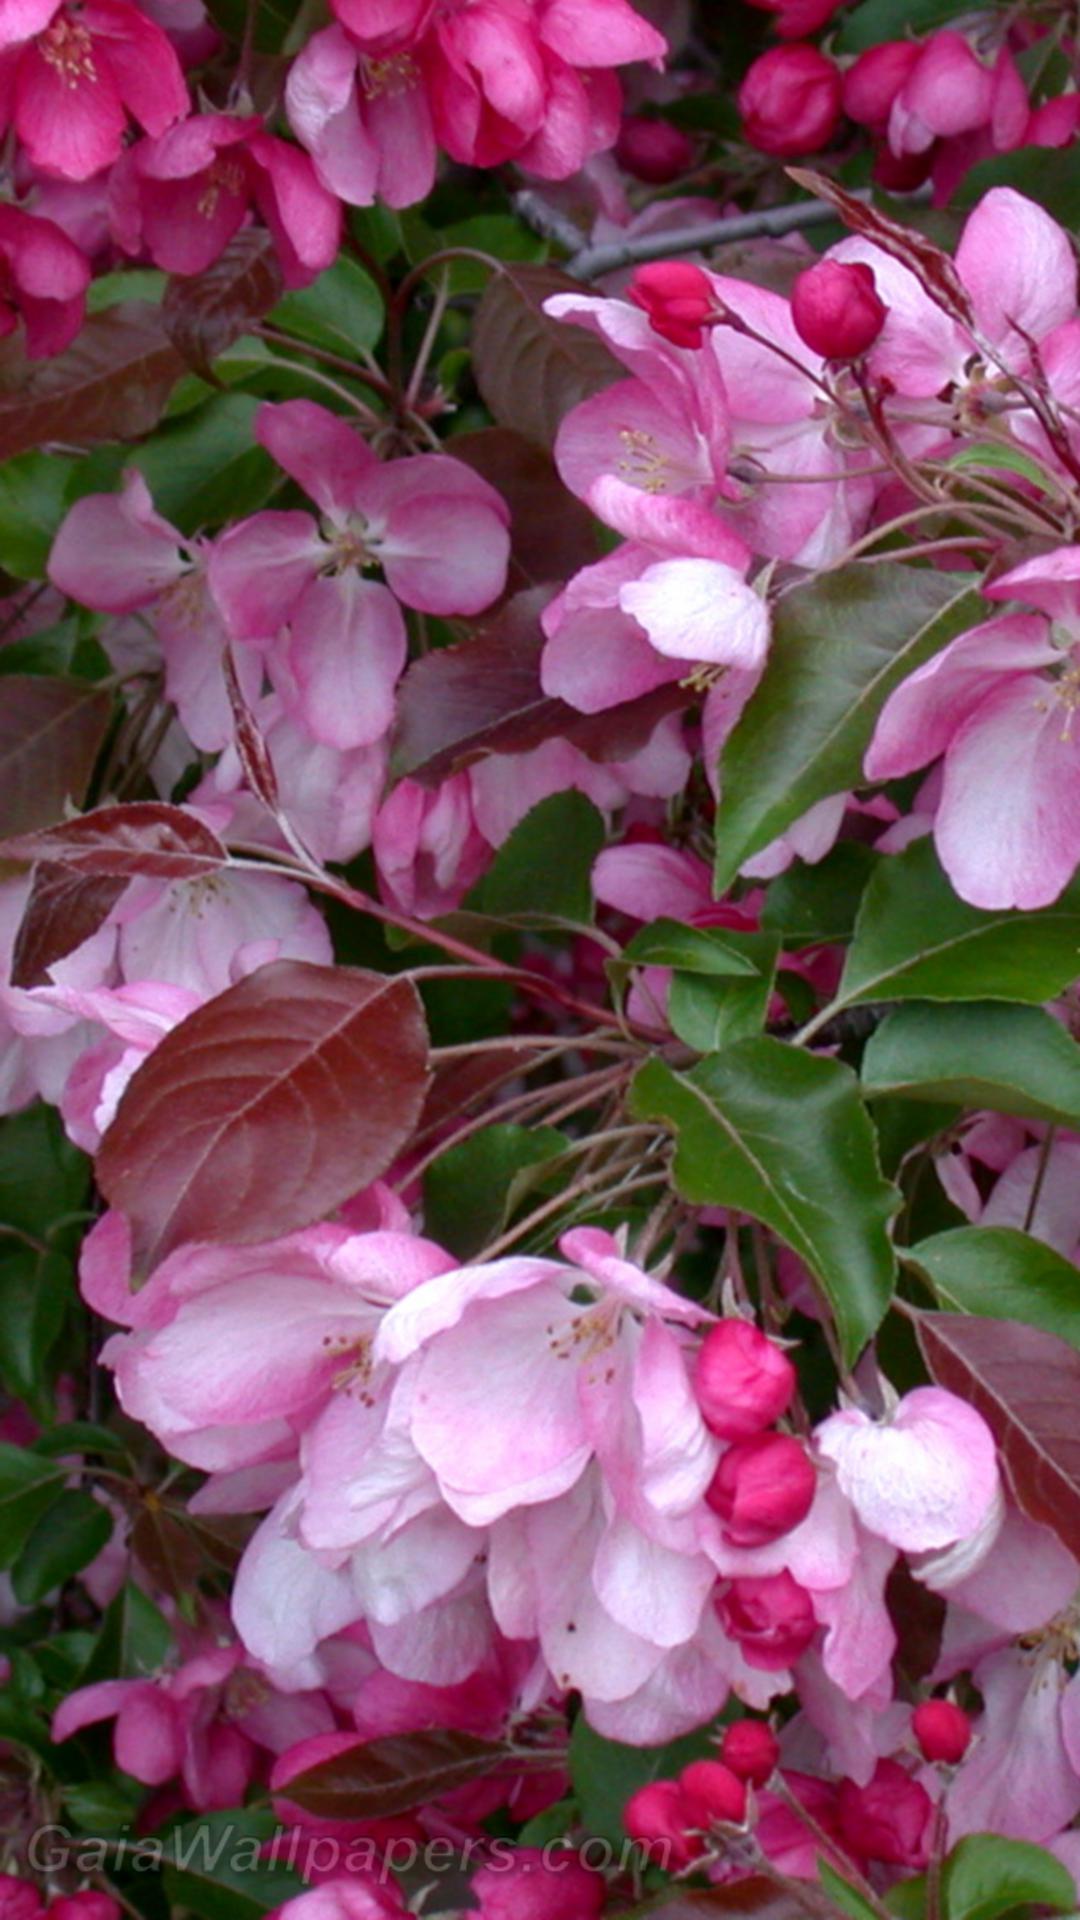 Arbre avec beaucoup de fleurs roses - Fonds d'écran gratuits